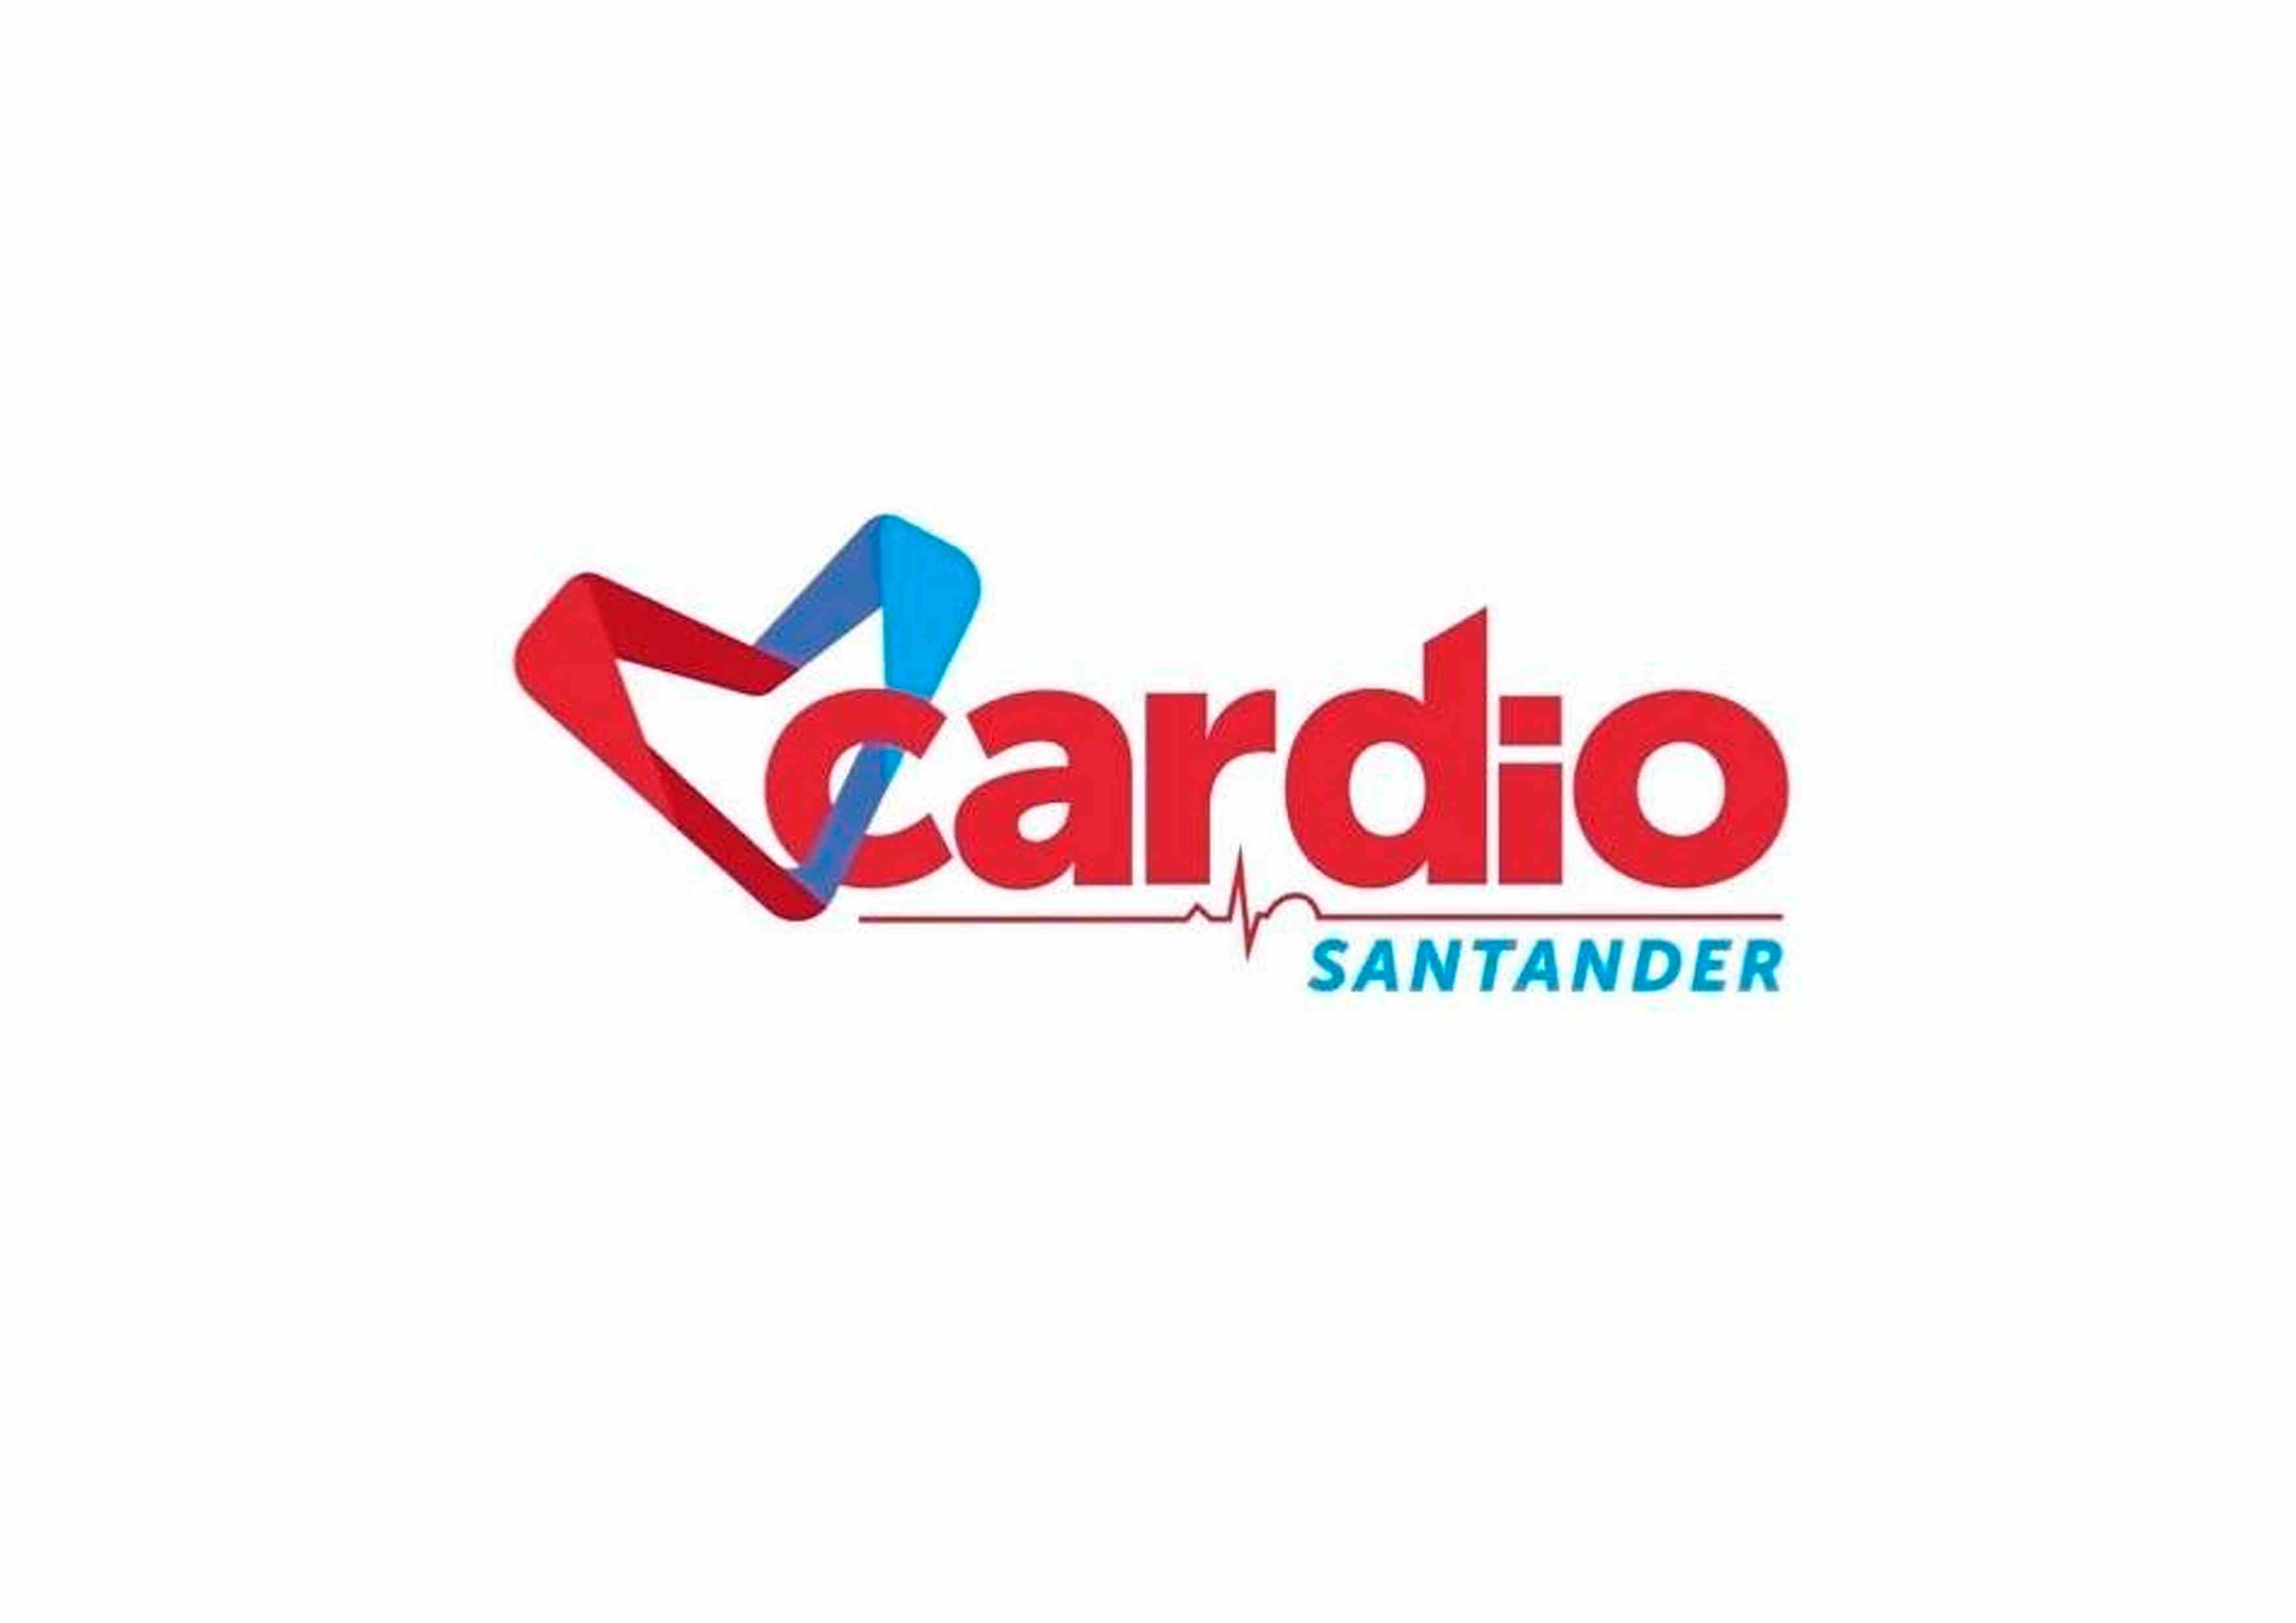 Cardio Santander